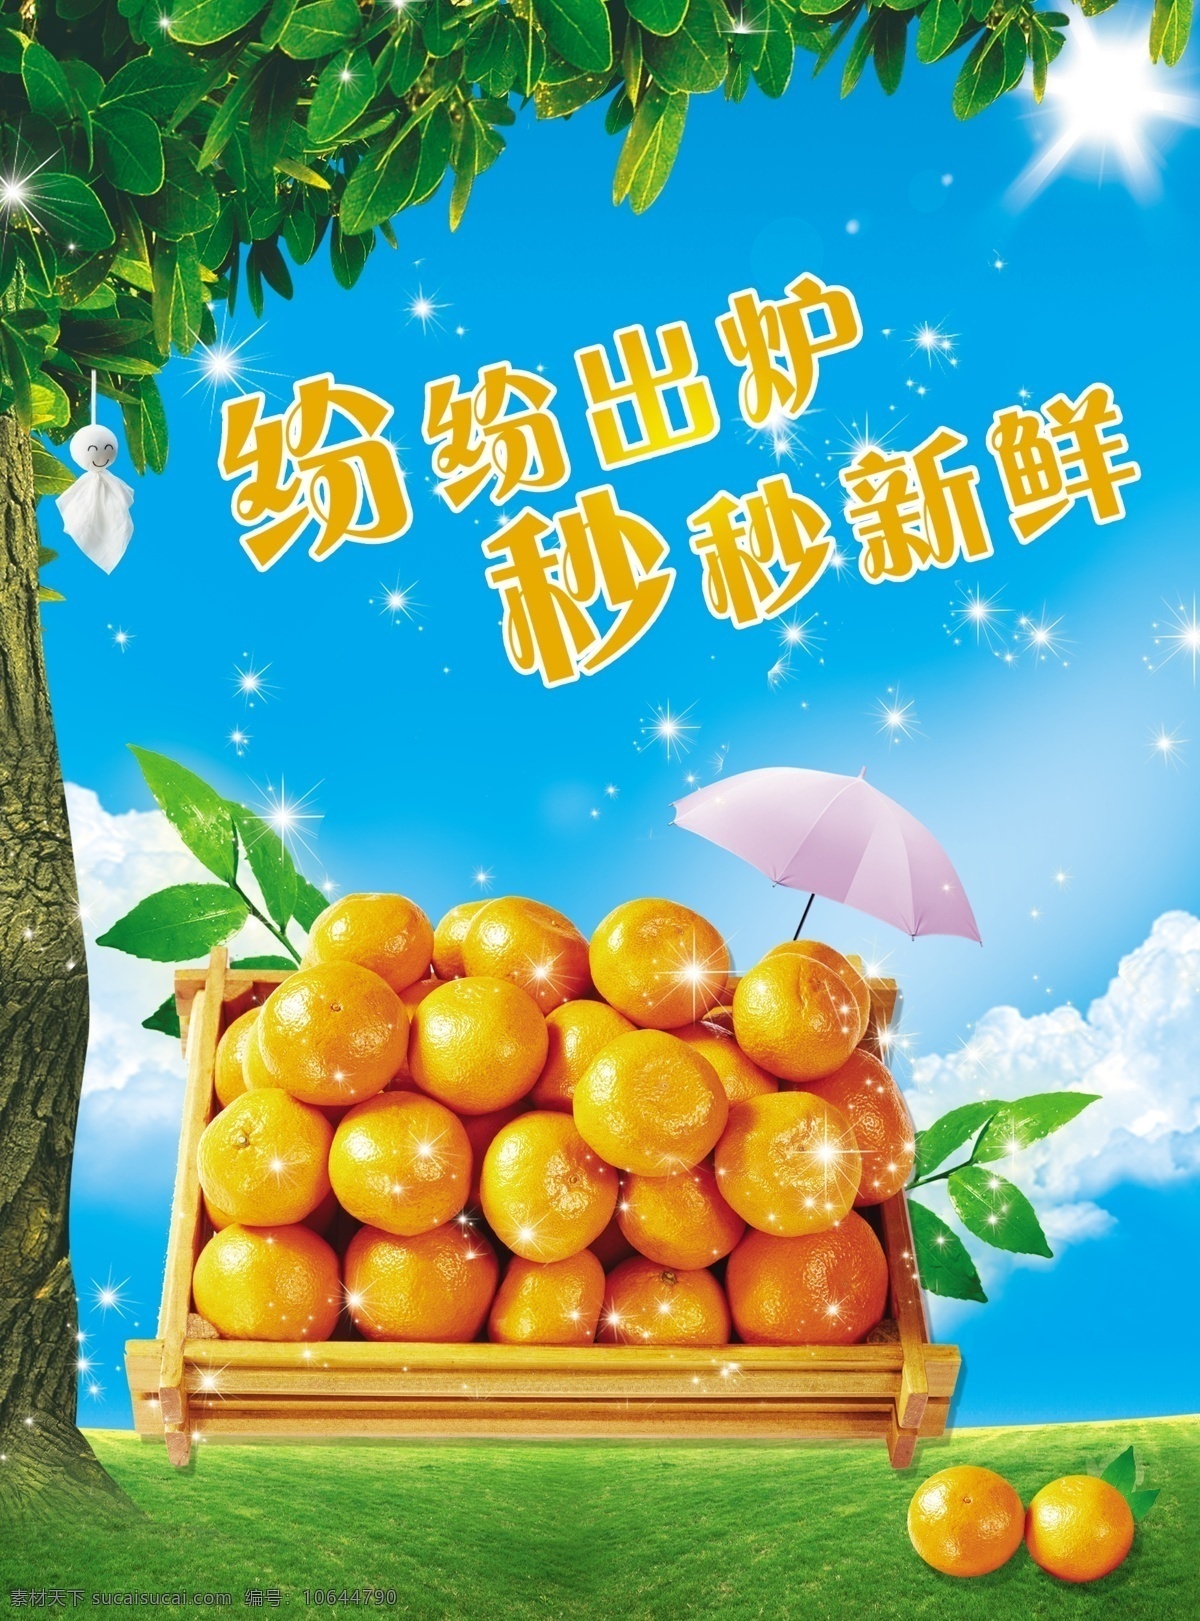 橙子 果汁 模板 水果海报设计 橙子海报 海报 新鲜 水果 绿叶 雨伞 太阳 树叶 300分辨率 广告设计模板 源文件 分层 红色